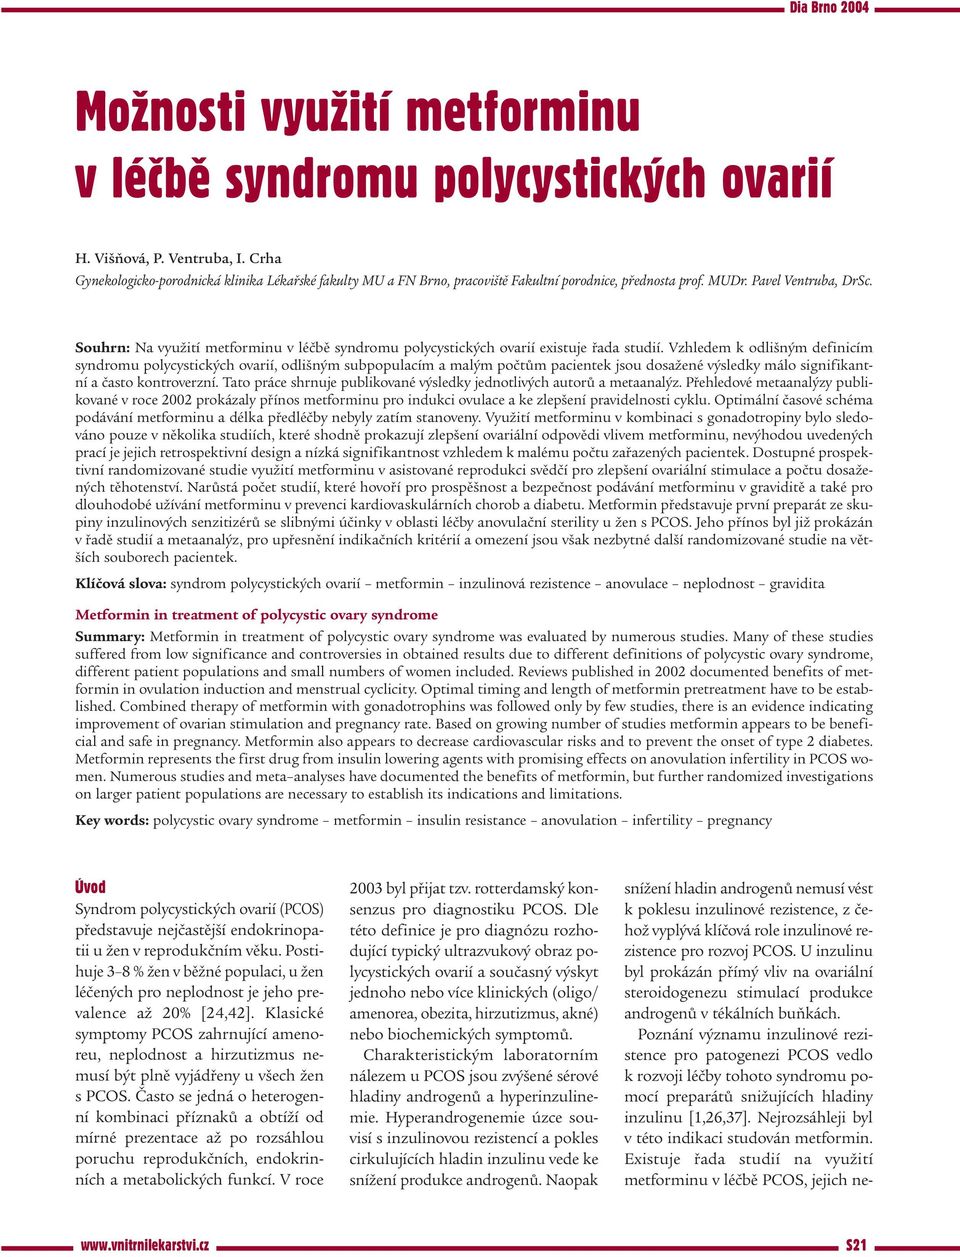 Souhrn: Na využití metforminu v léčbě syndromu polycystických ovarií existuje řada studií.